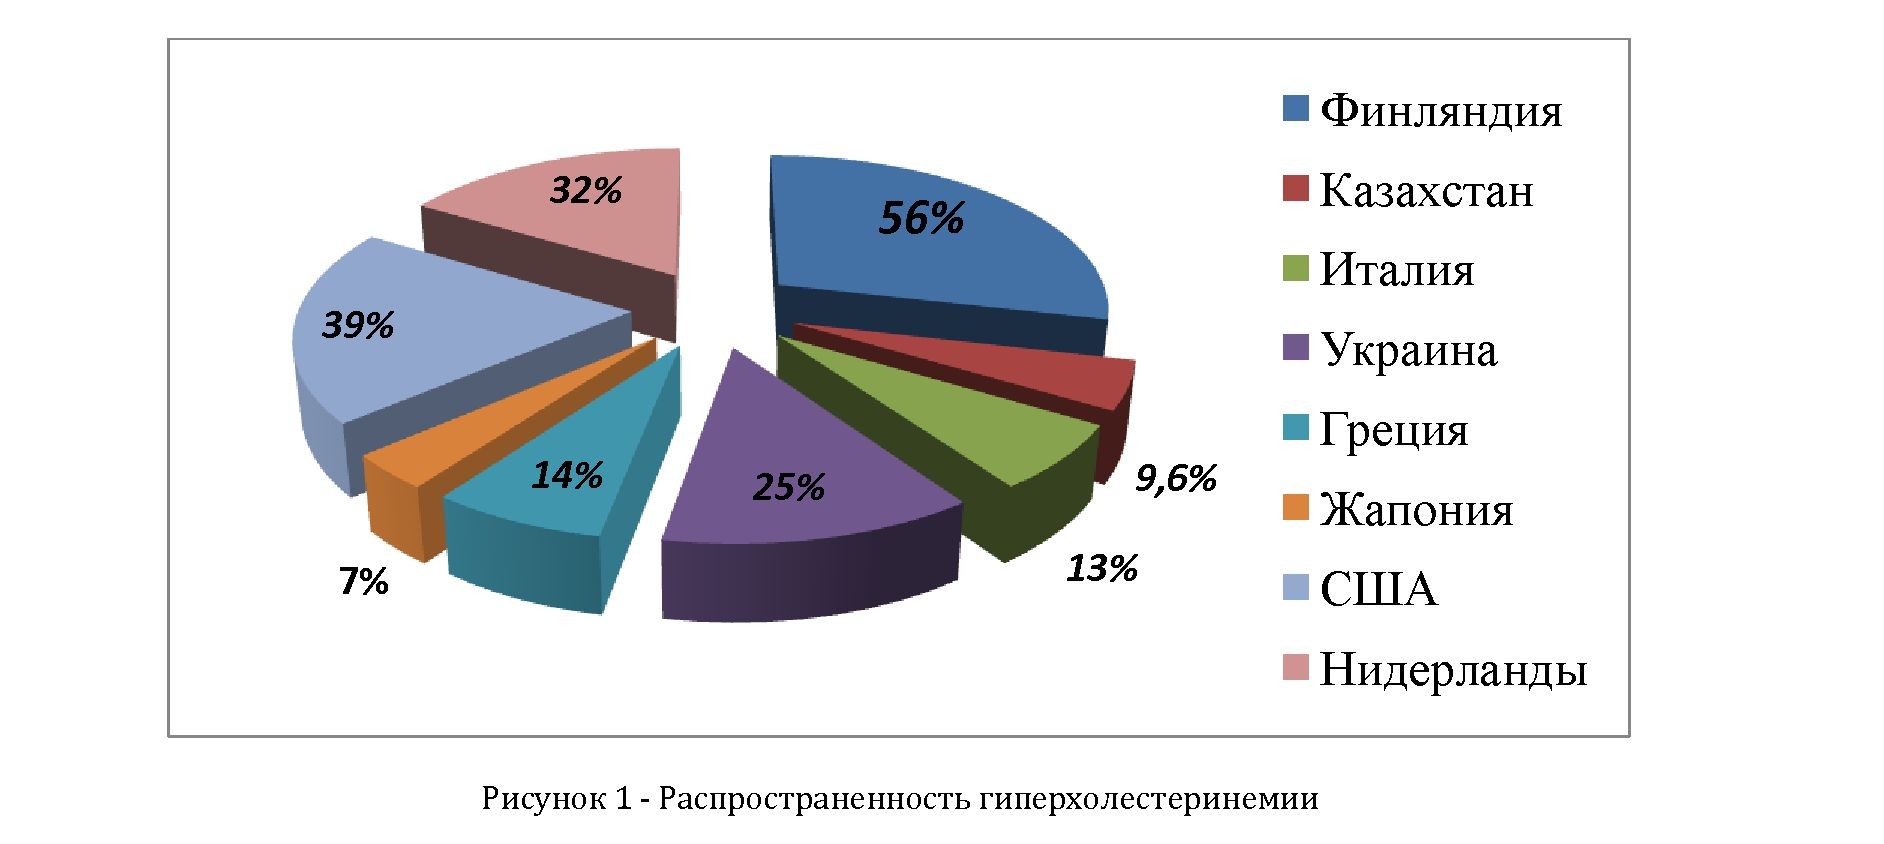 Распространенность гиперхолестеринемии населения ГКП №3 по данным скрининга 2012- 2013 года